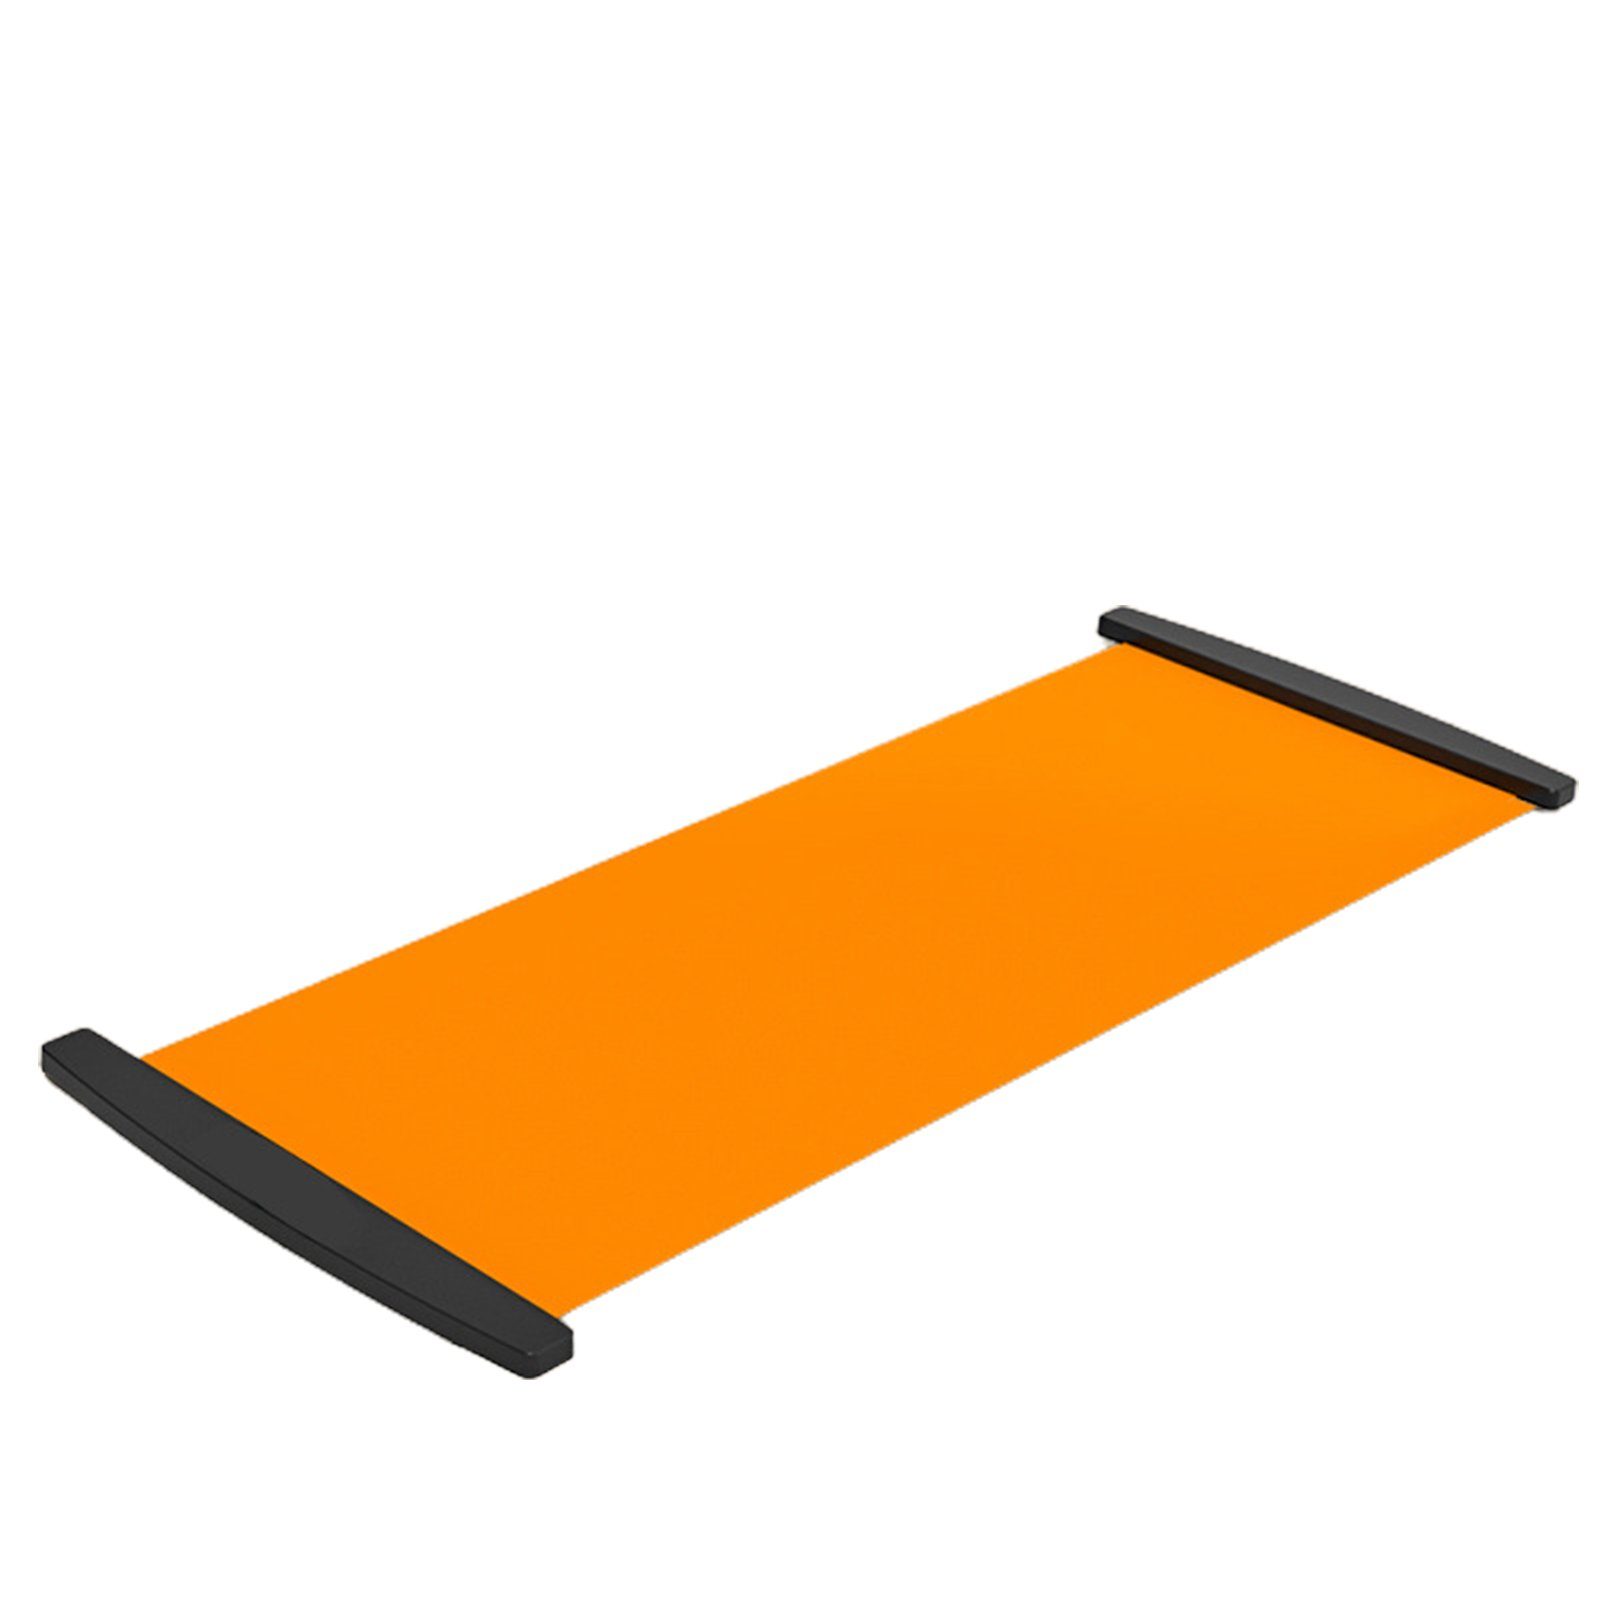 Blusmart Ski- und Snowboardträger Tragbares Gleitbrett, Superglattes PVC, Vielseitig Einsetzbarer orange1